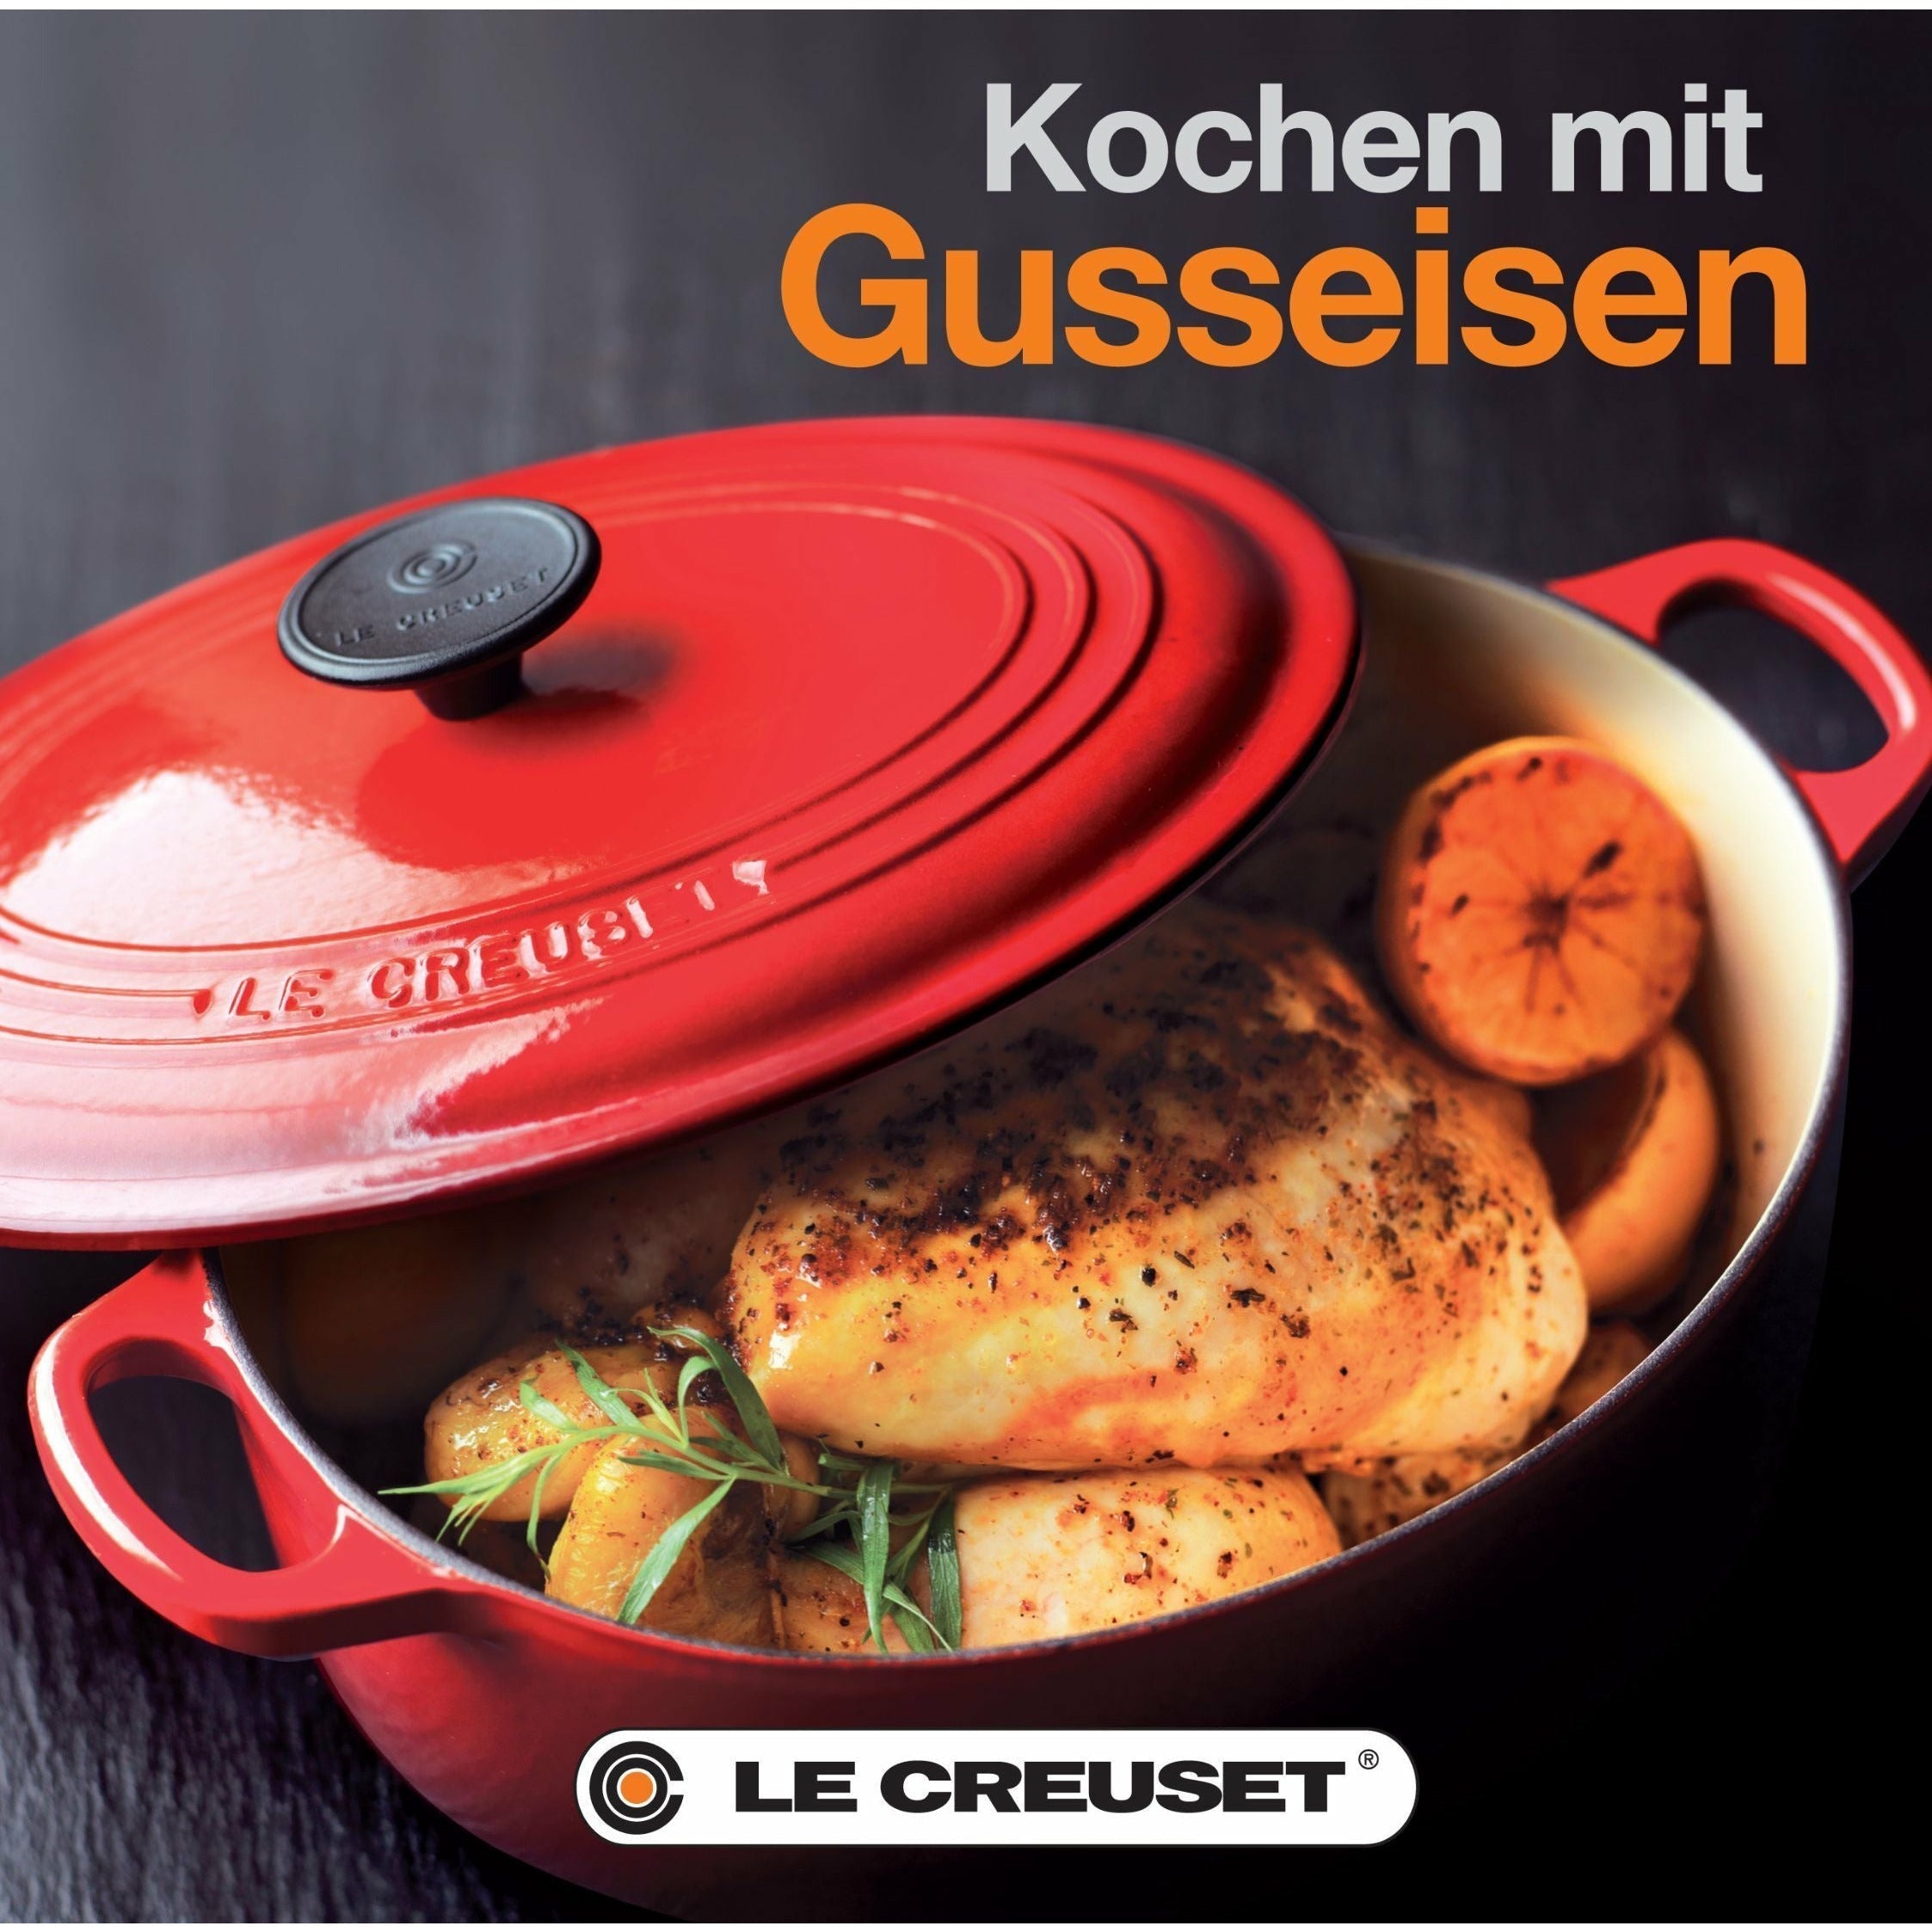 Le Creuset Cookbook Cast Iron German